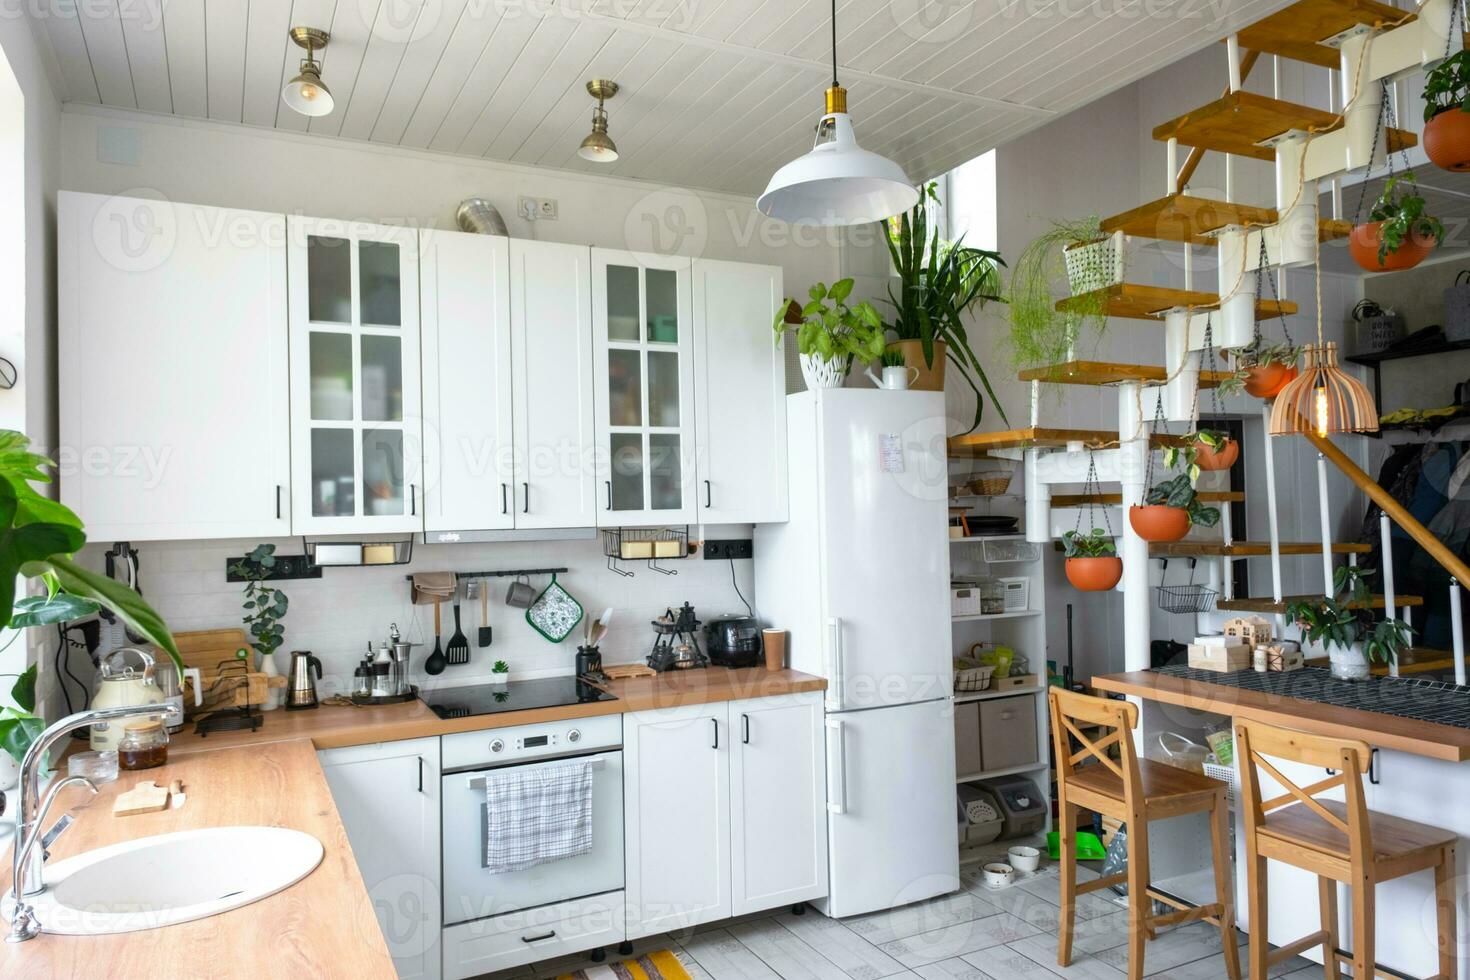 das Allgemeines planen von ein Licht Weiß modern rustikal Küche mit ein modular Metall Treppe dekoriert mit eingetopft Pflanzen. Innere von ein Haus mit Heimpflanzen foto